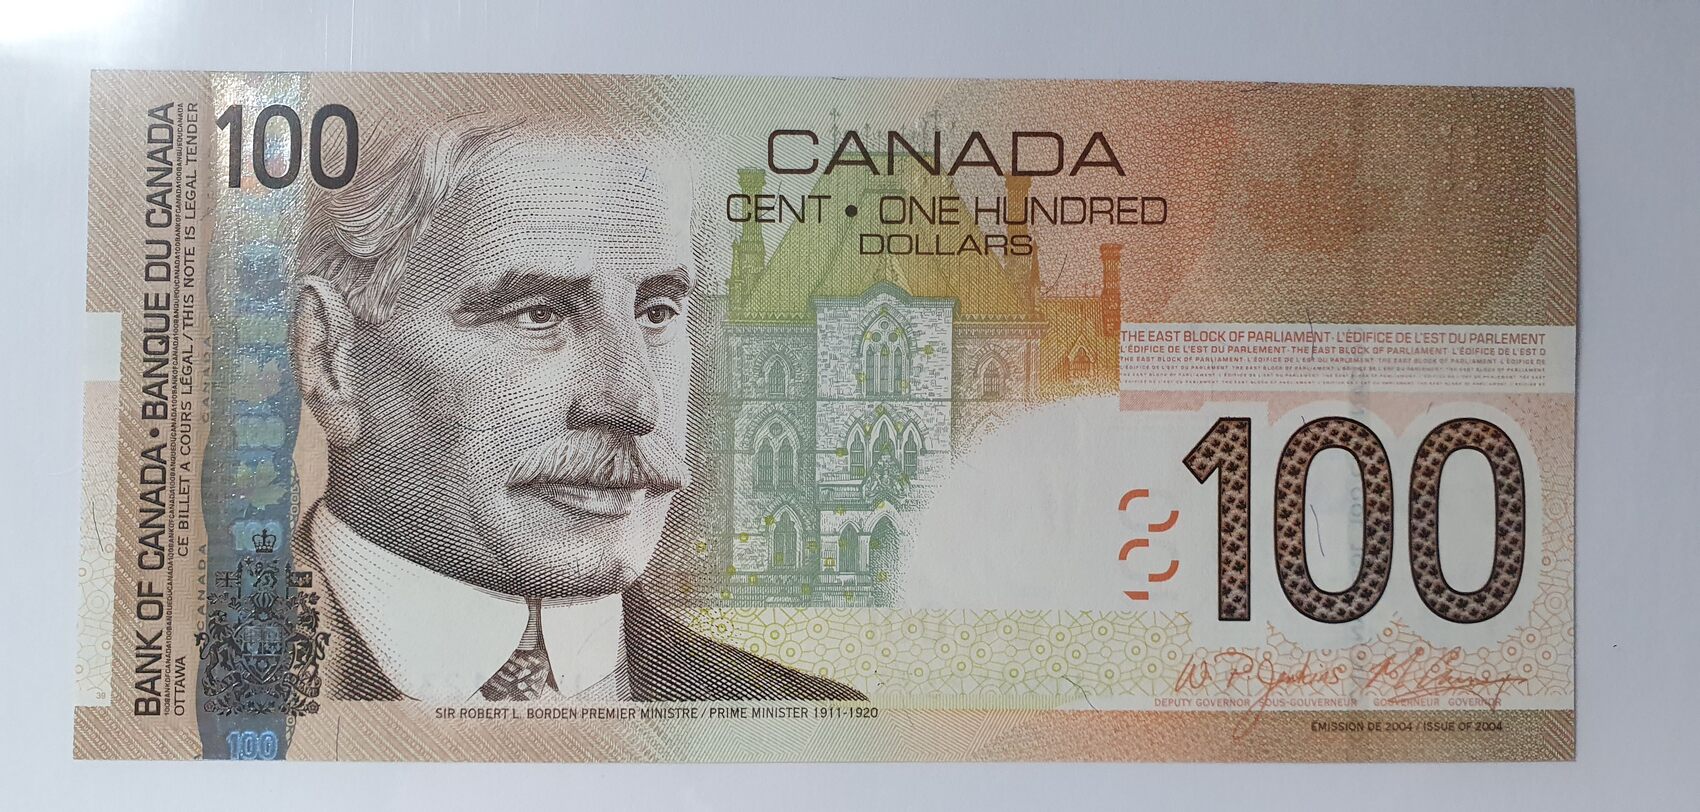 канадские 20 долларов фото